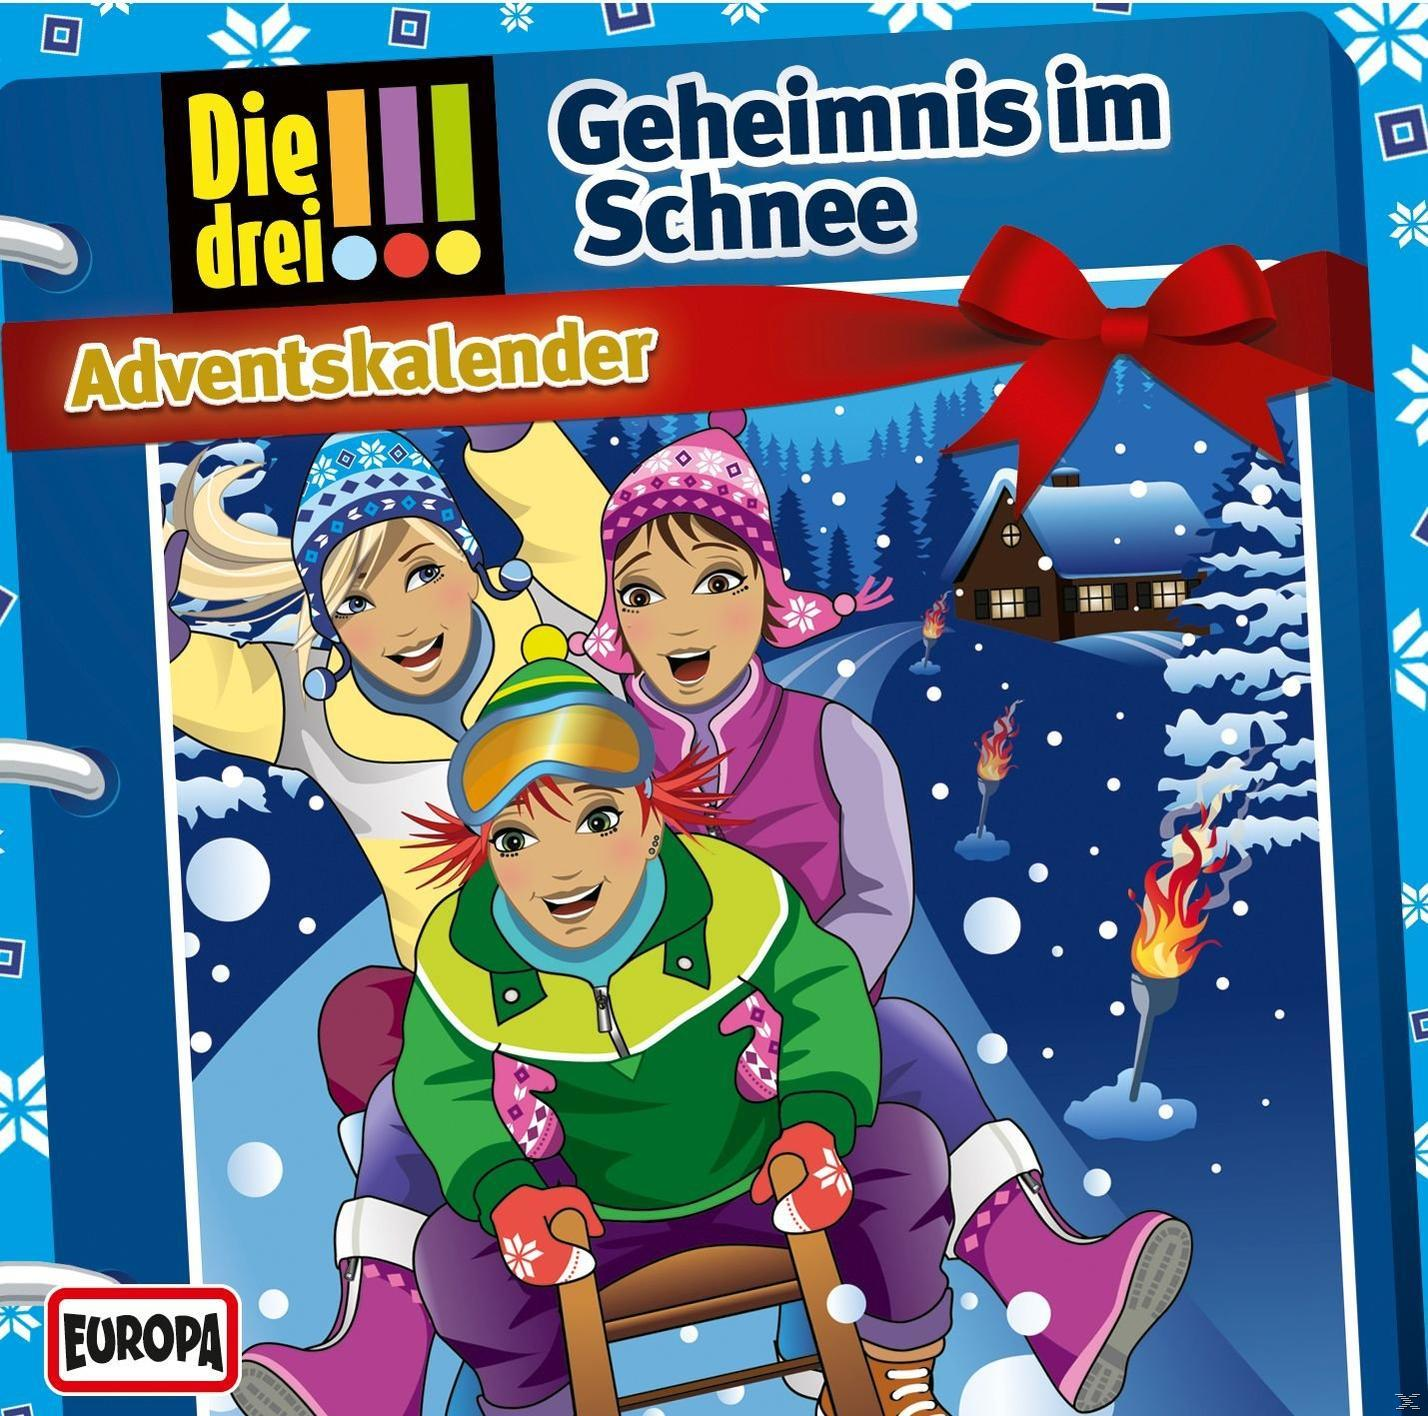 Die Drei - ??? (CD) Adventskalender - Die 2015: drei - Schnee Geheimnis !!! im